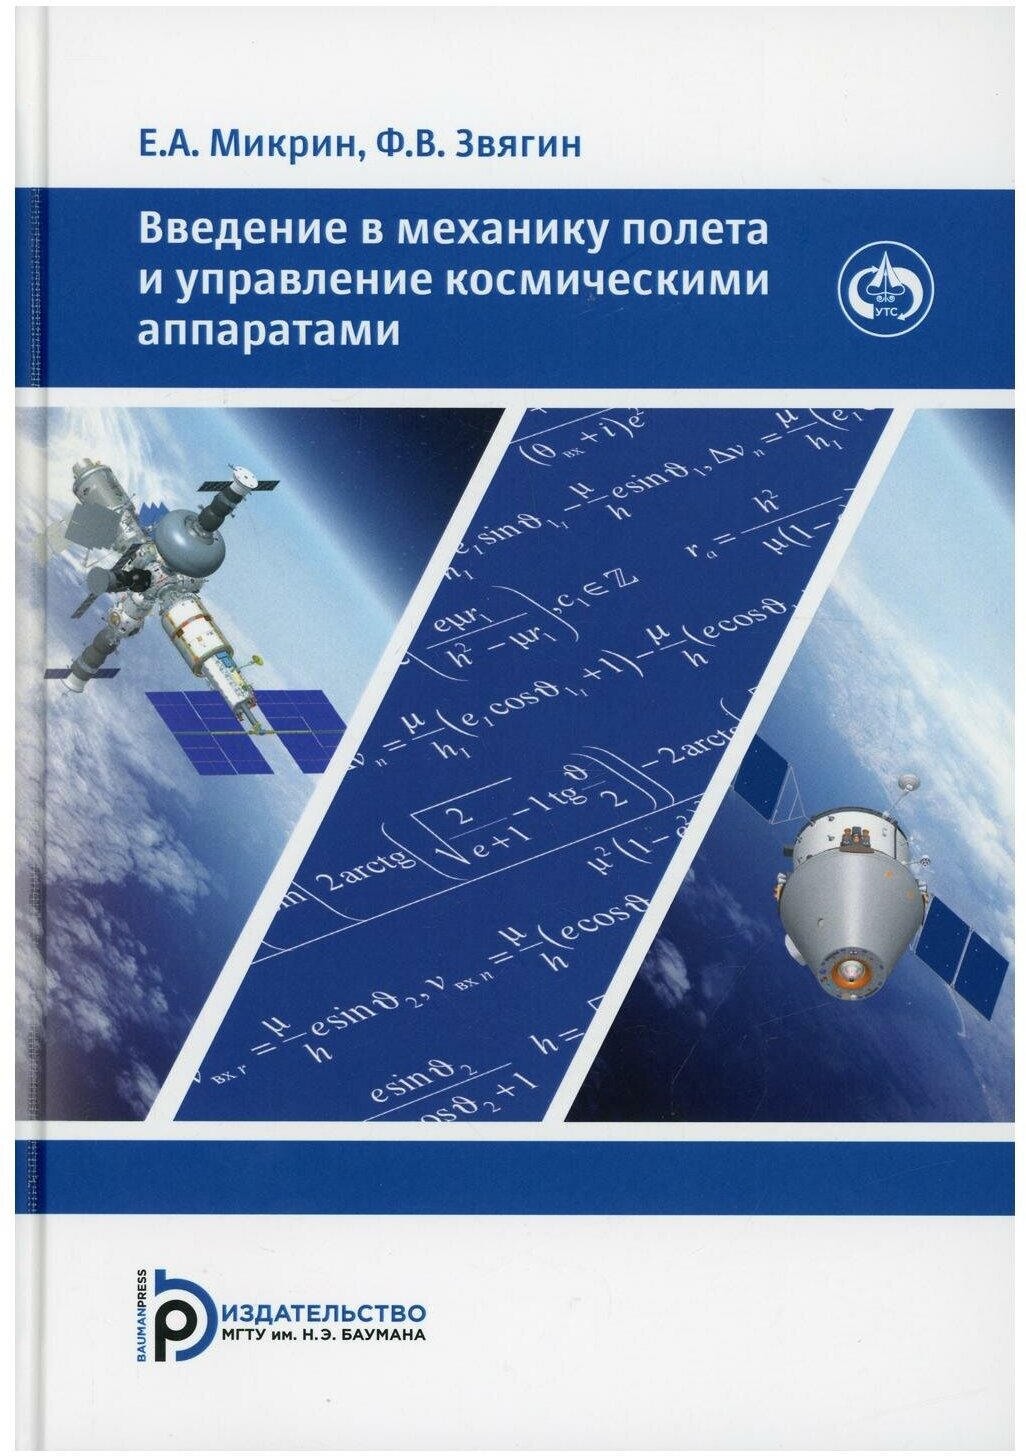 Введение в механику полета и управления космическими аппаратами: Учебник для ВУЗов